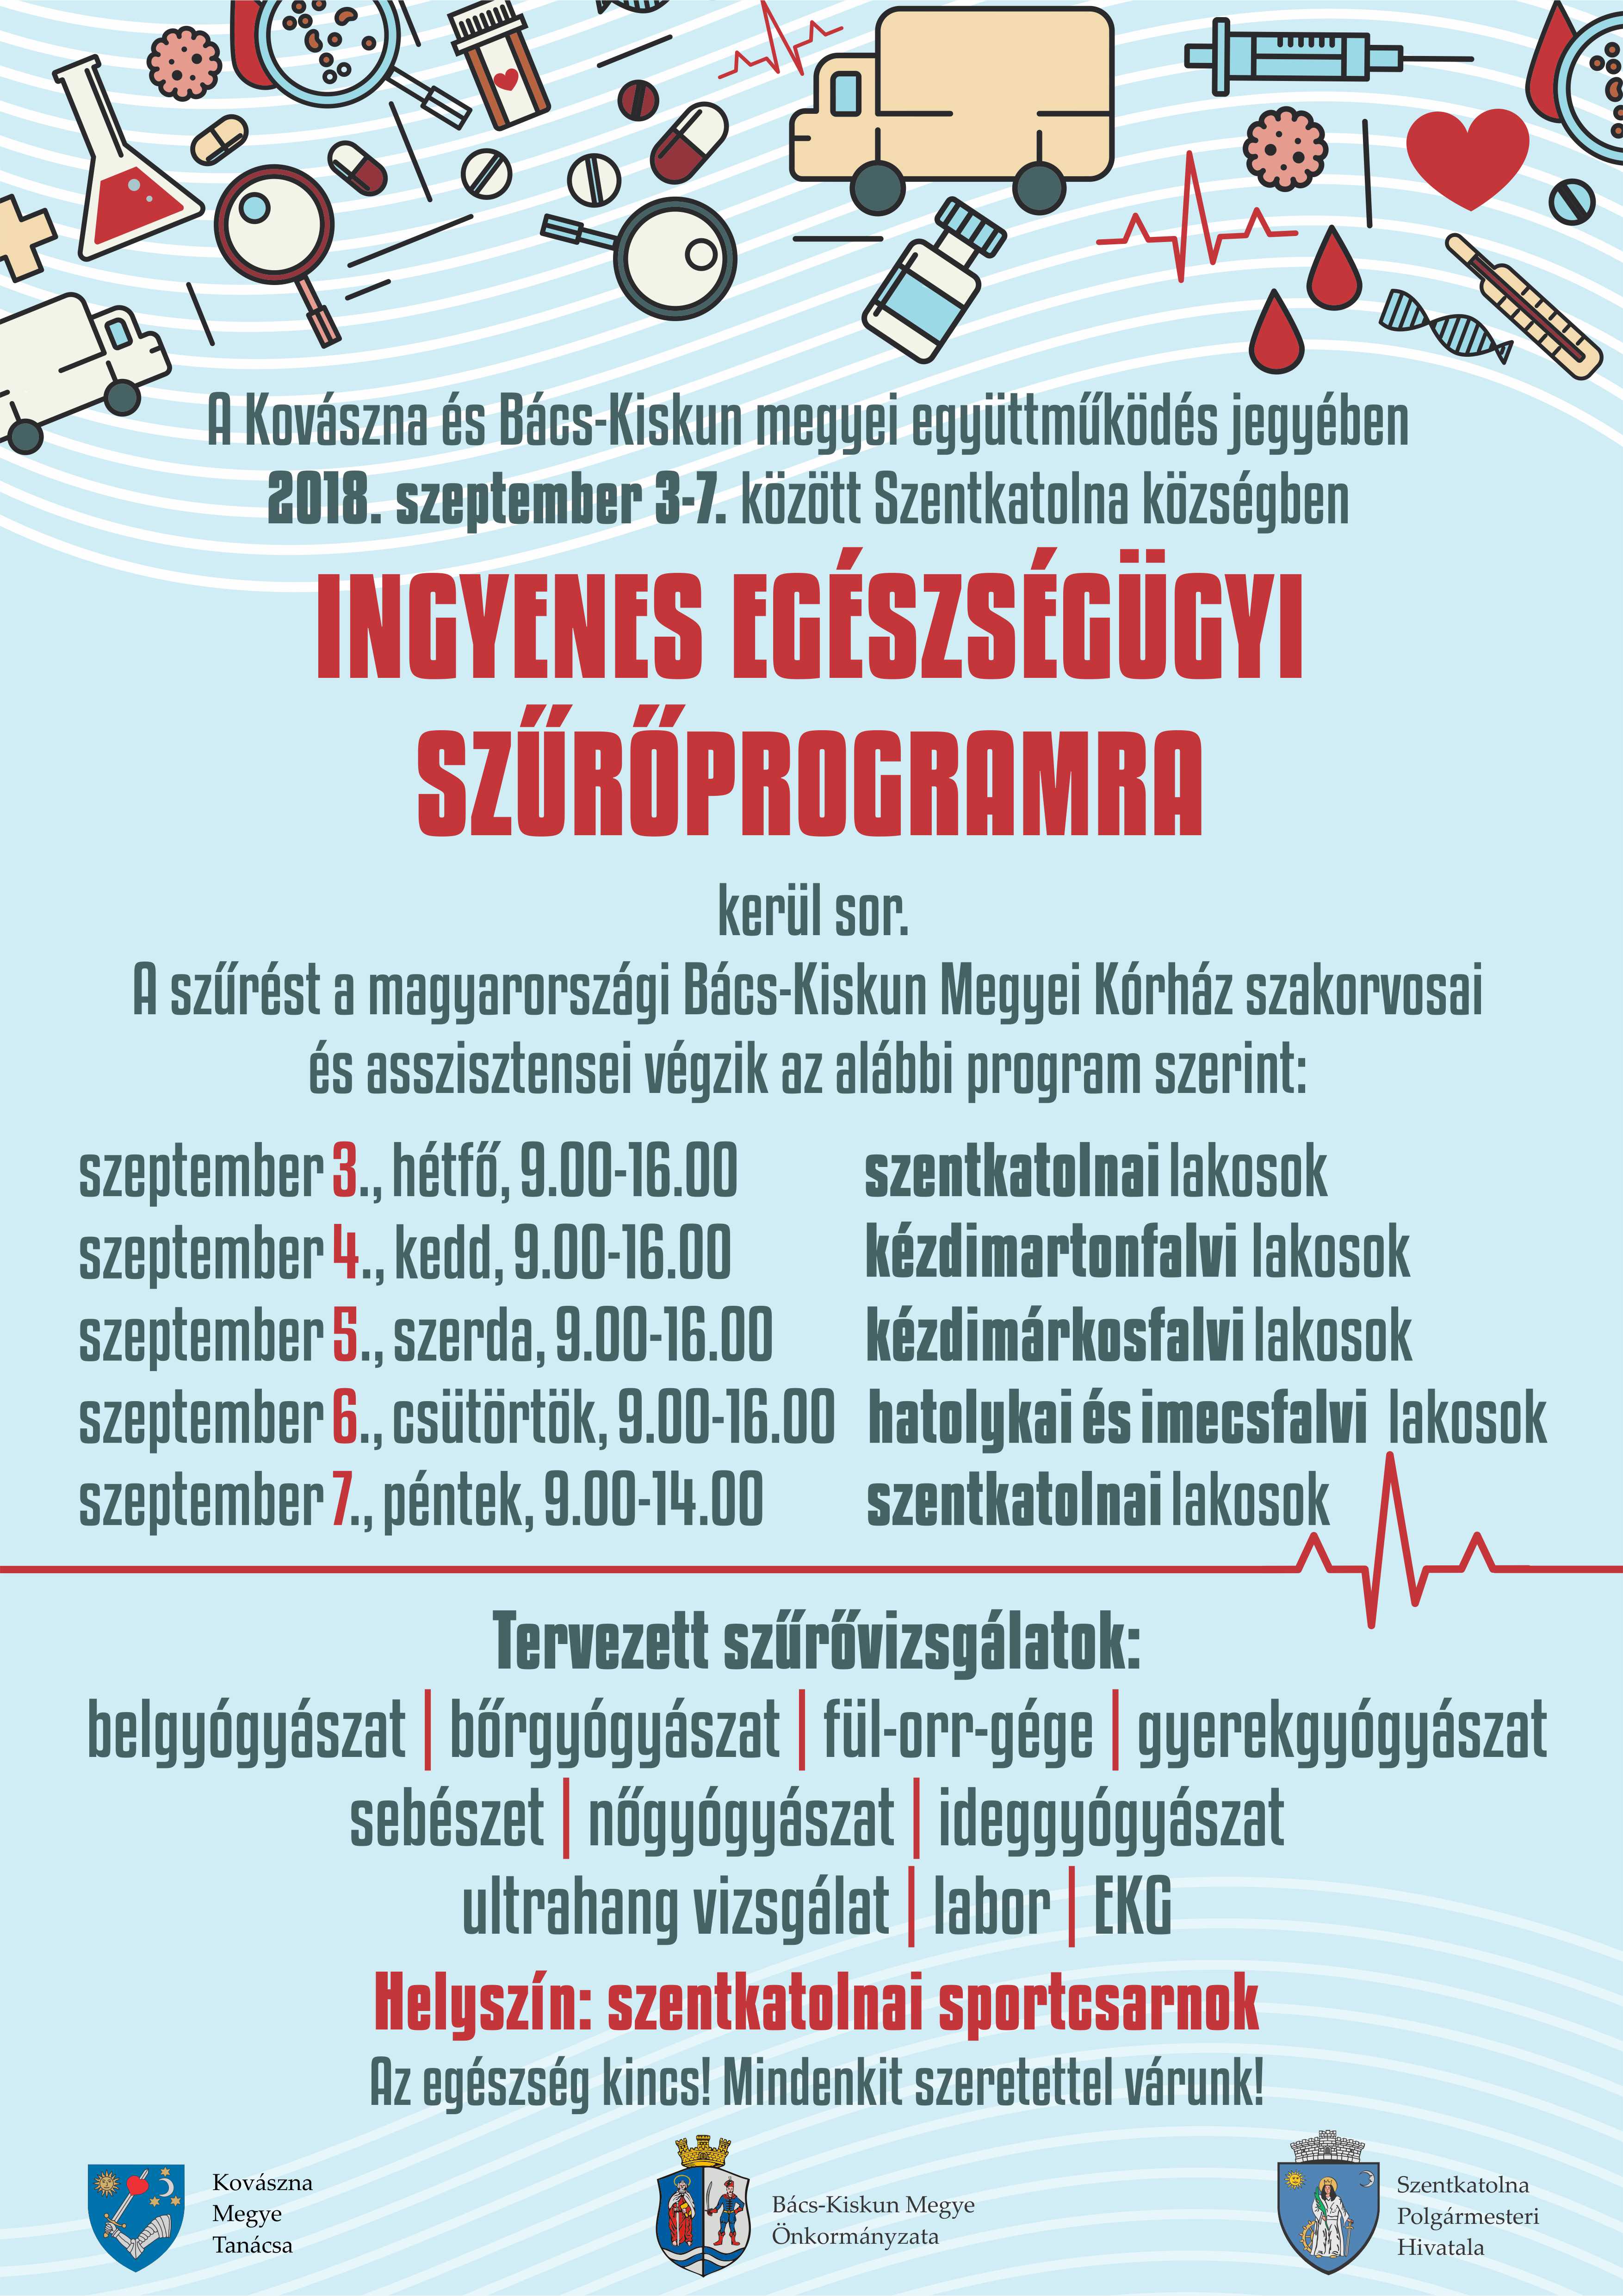 Atenţie la sănătatea noastră! - Screening medical gratuit în zona Târgu Secuiesc